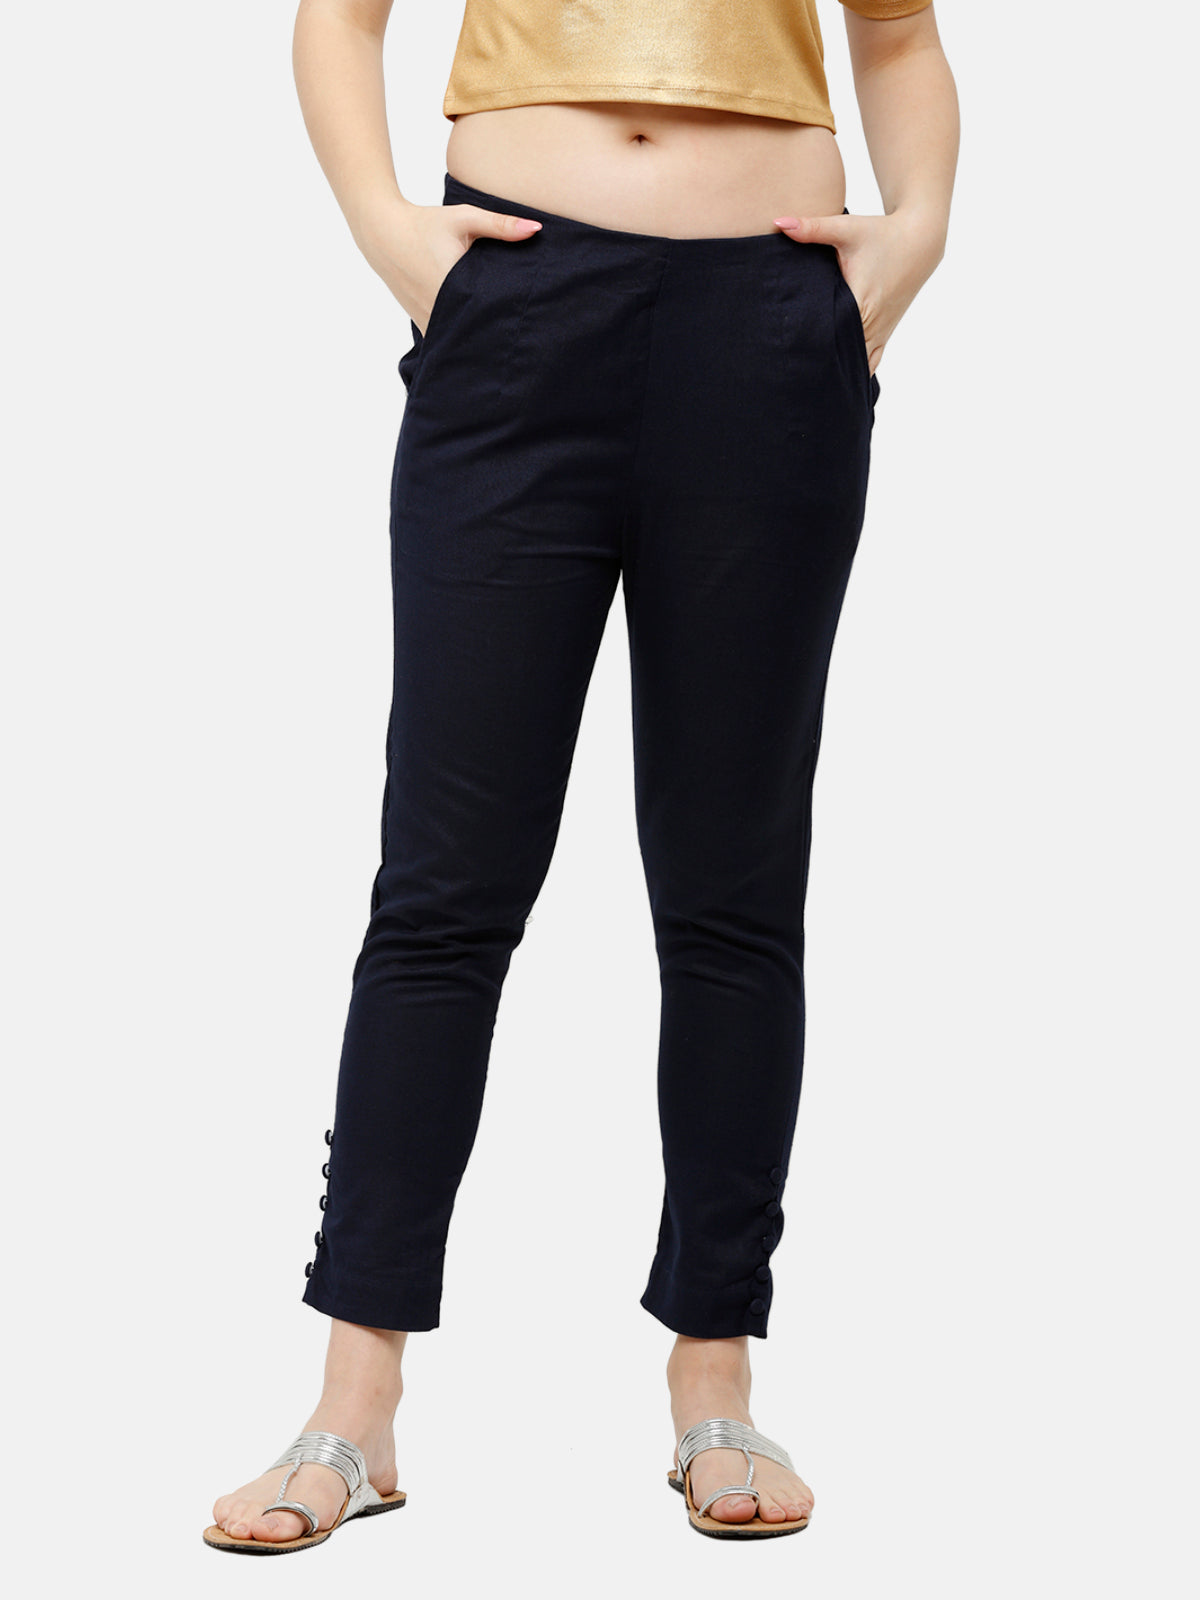 Calvin Klein Women's Highline Ankle Length Pant, Regular & Petite - Macy's